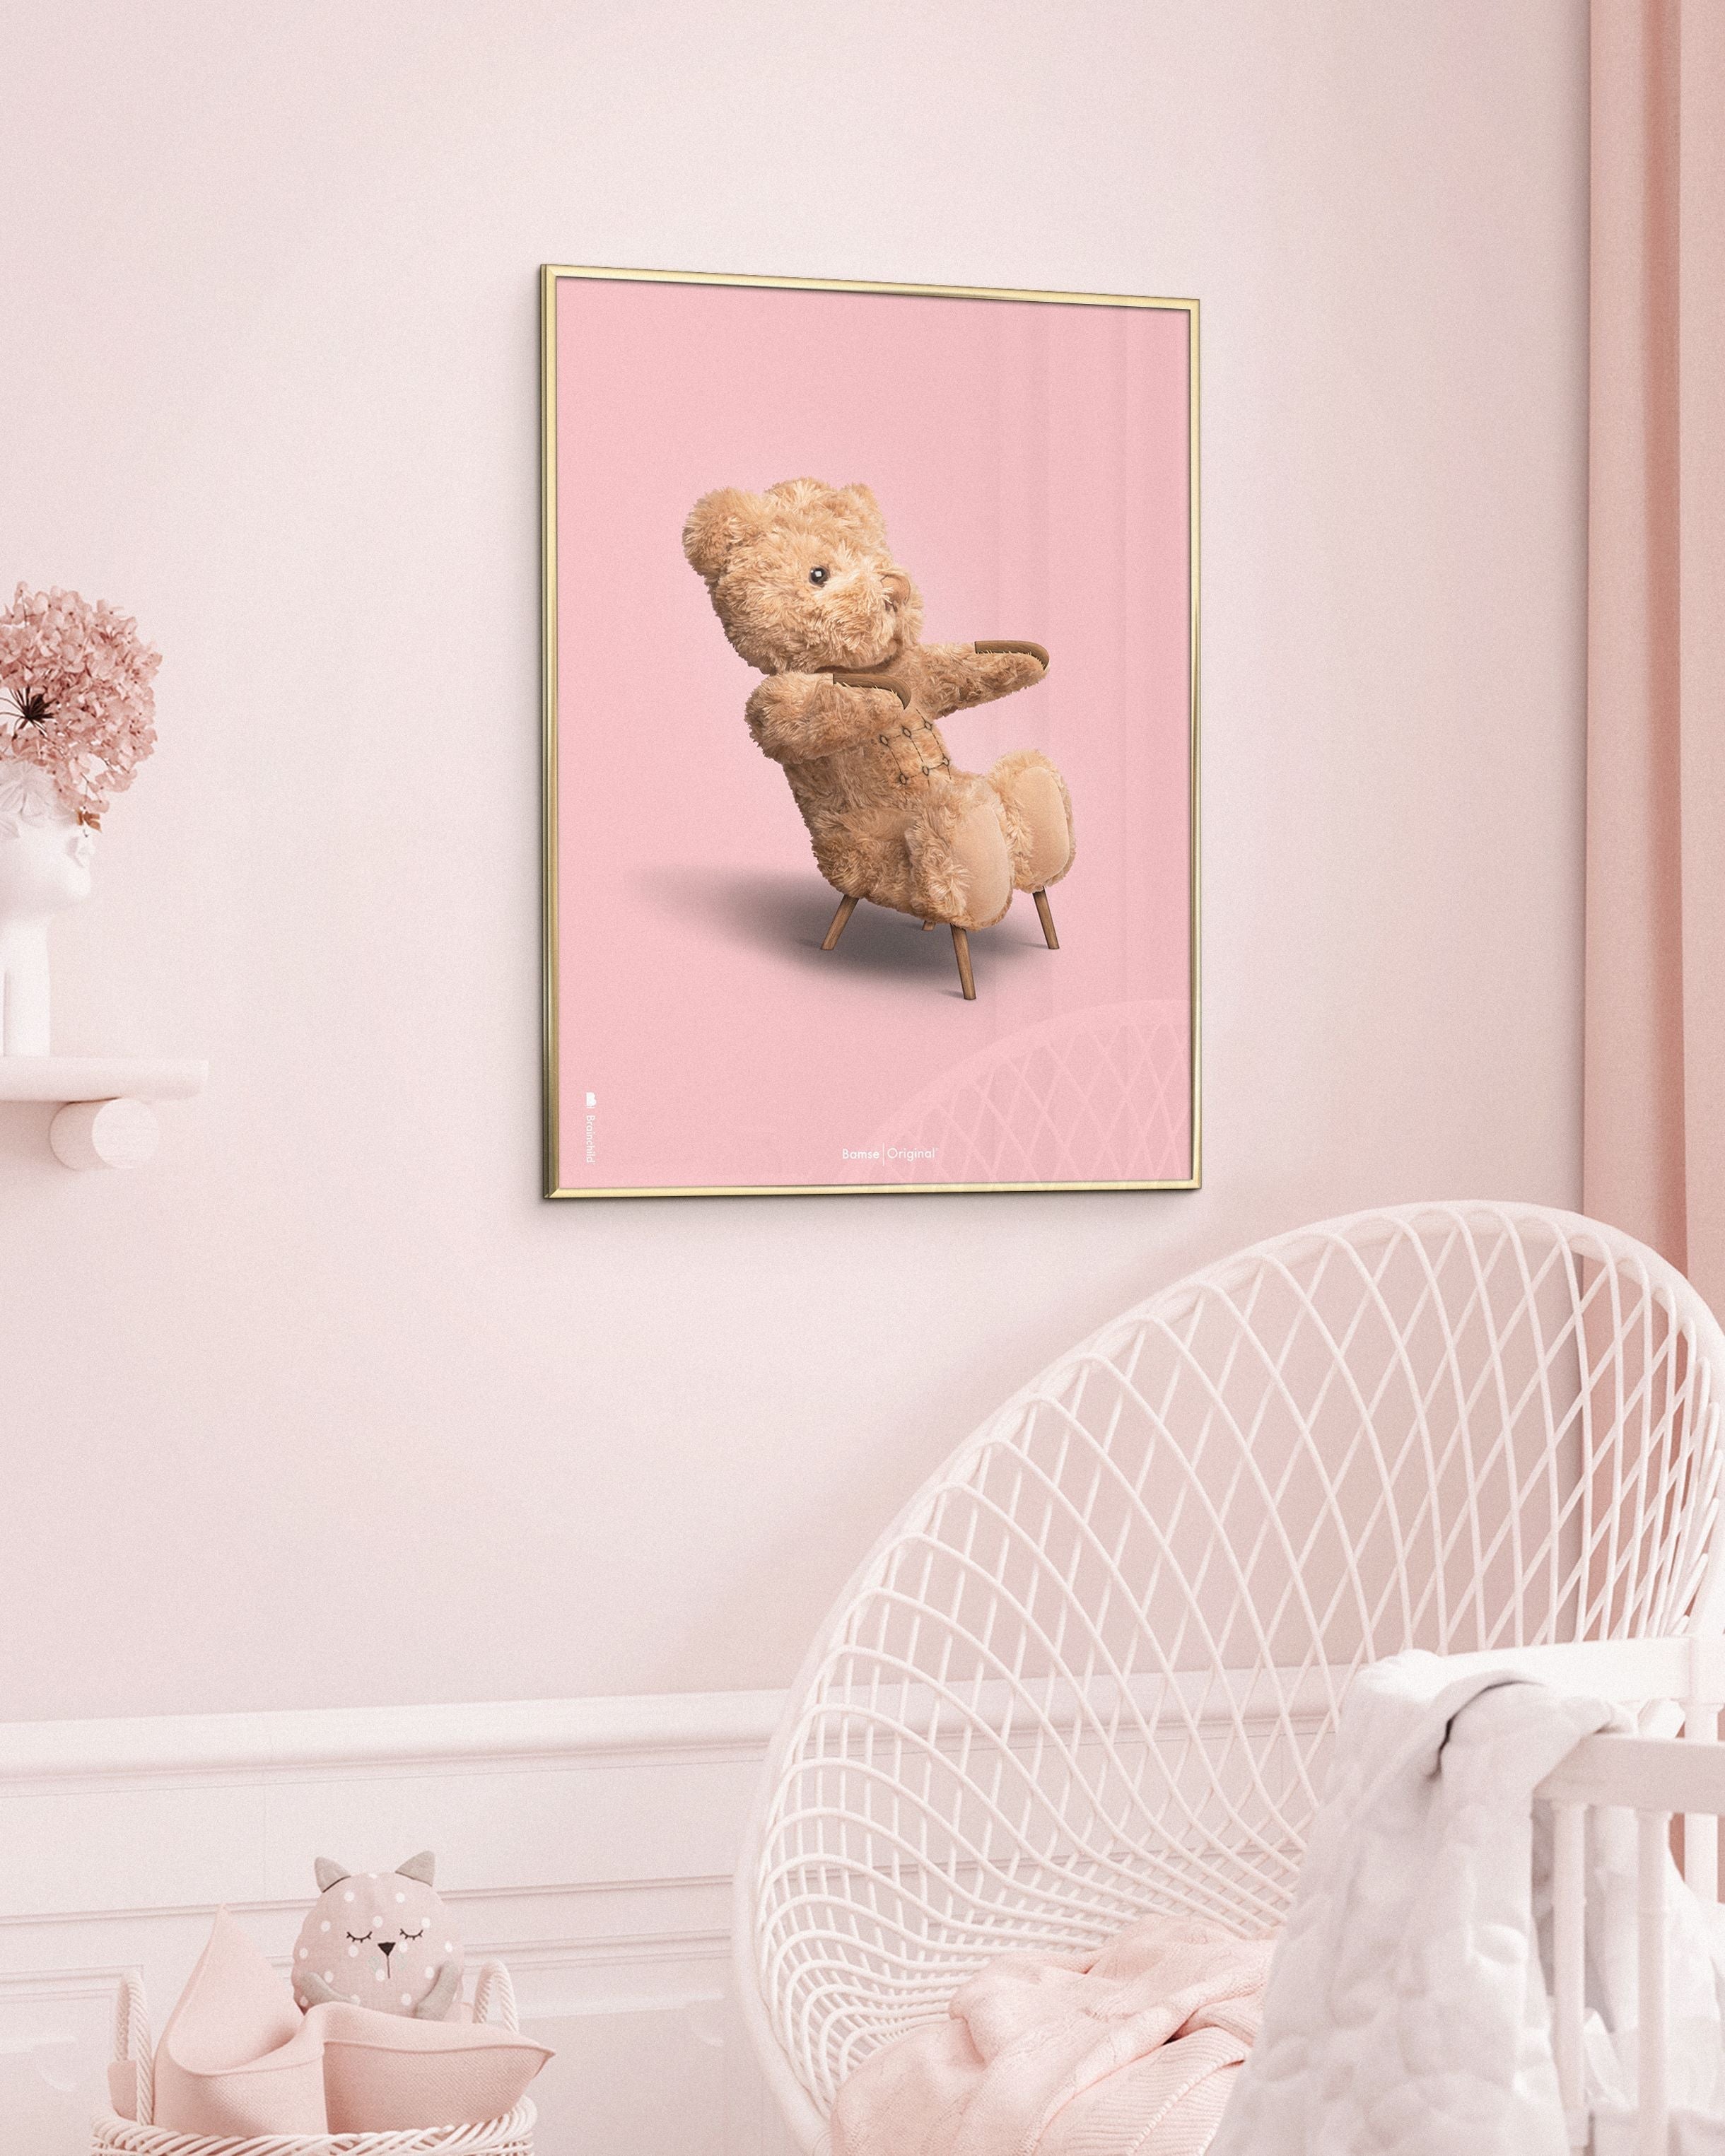 Brainchild Teddy Bear Classic plakát bez rámu 30x40 cm, růžové pozadí